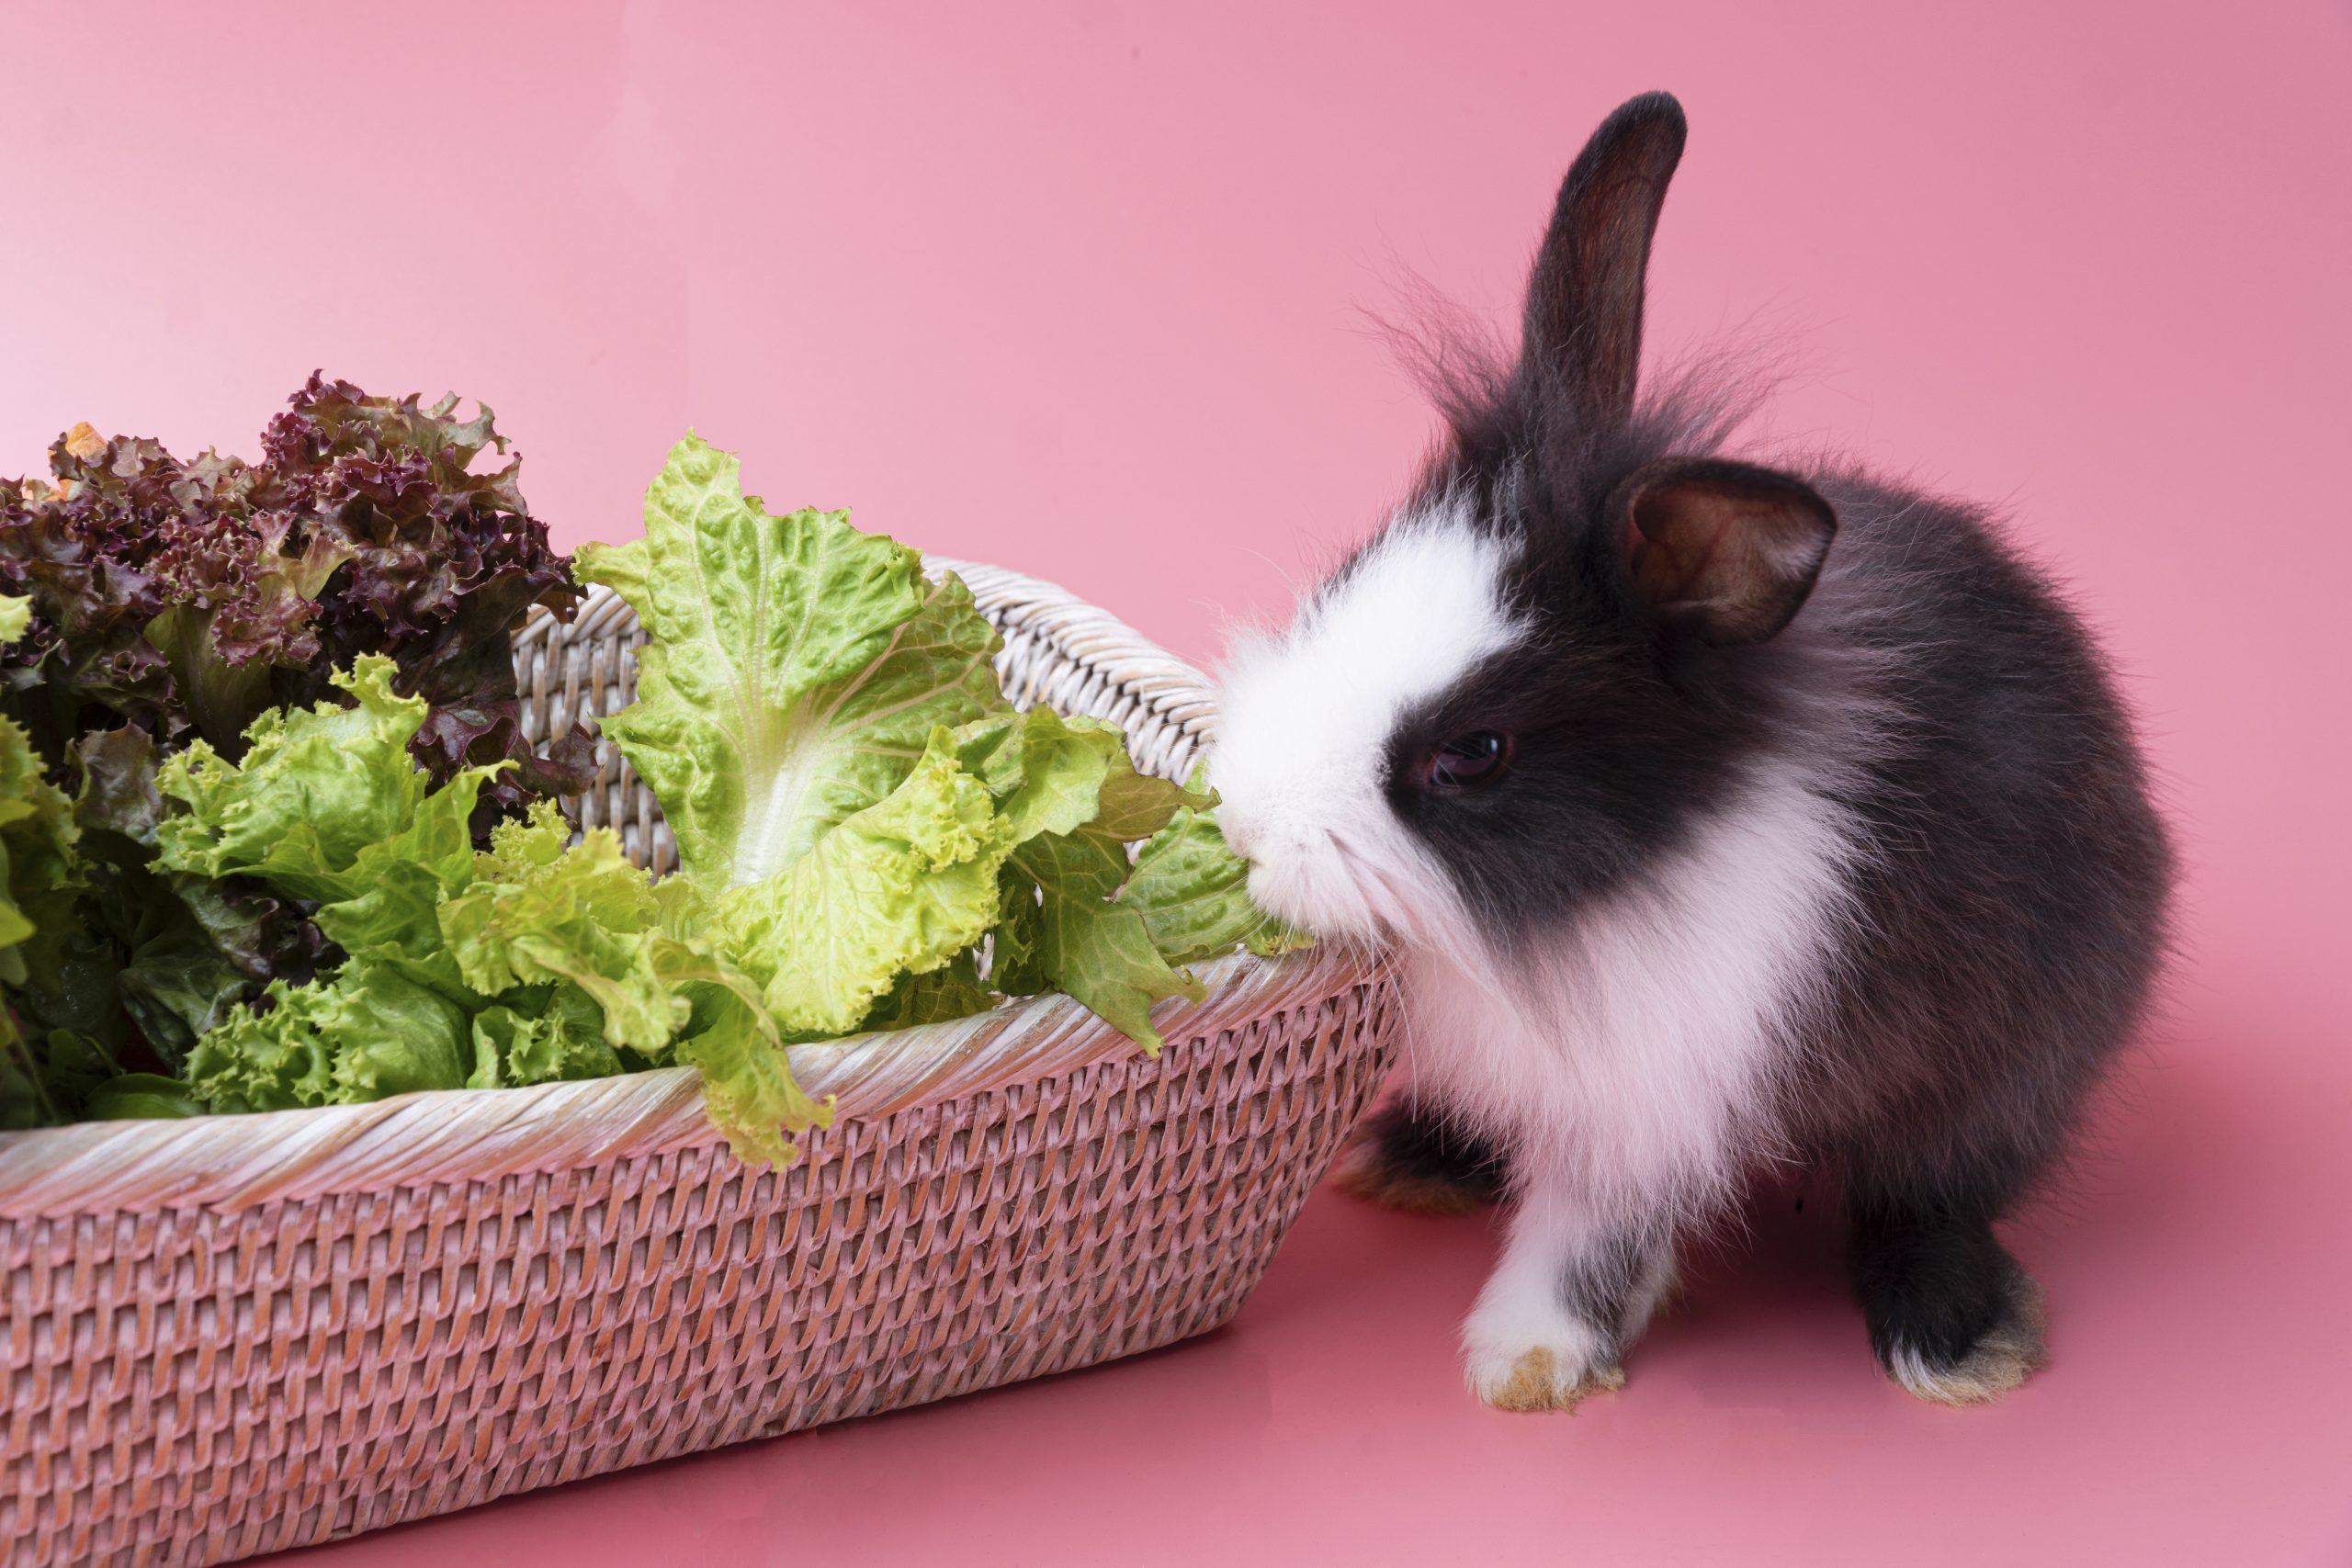 rabbit nibbling on lettuce